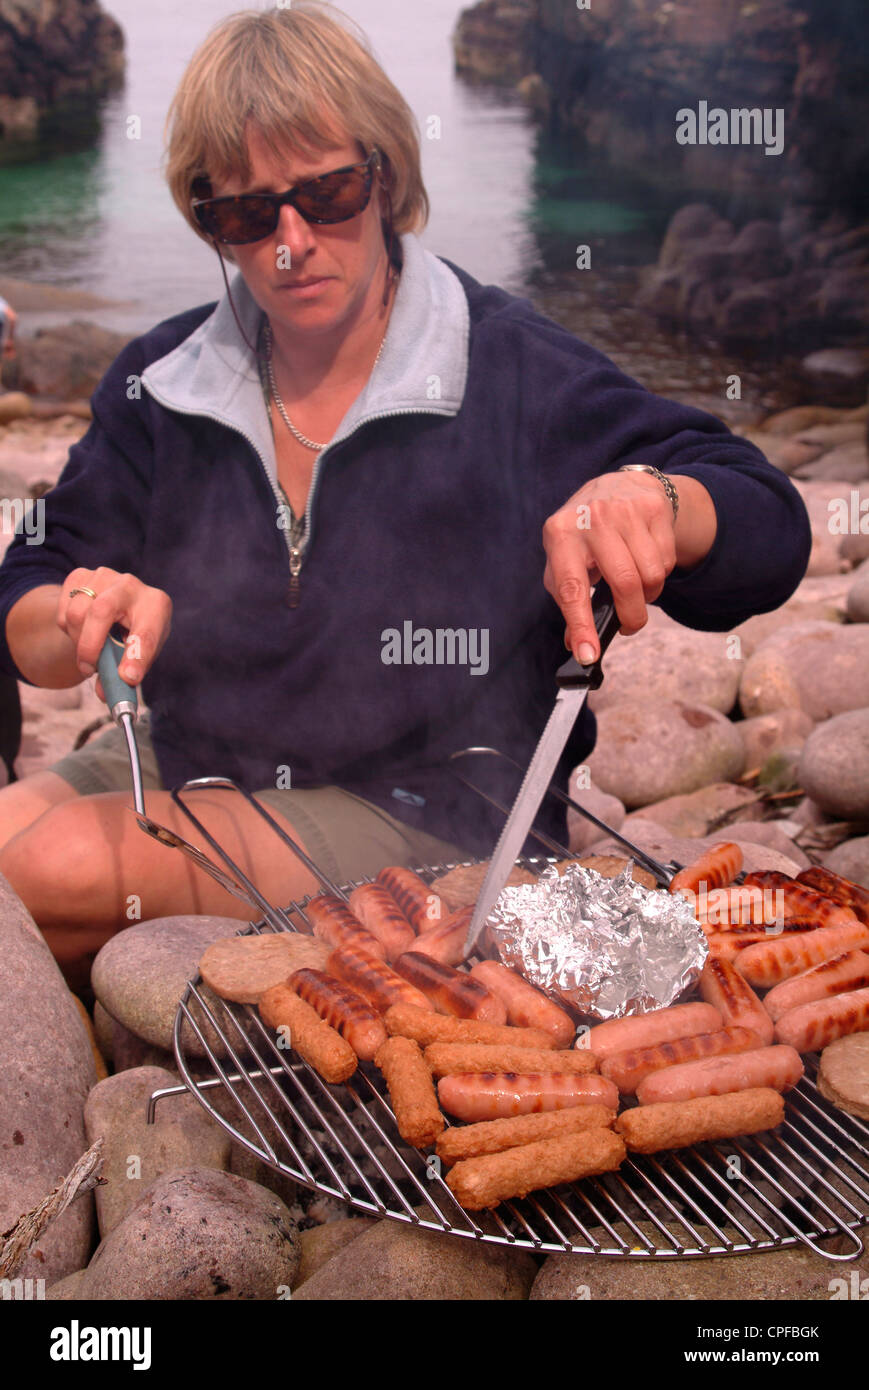 Woman barbecuing sausages sur la plage Banque D'Images